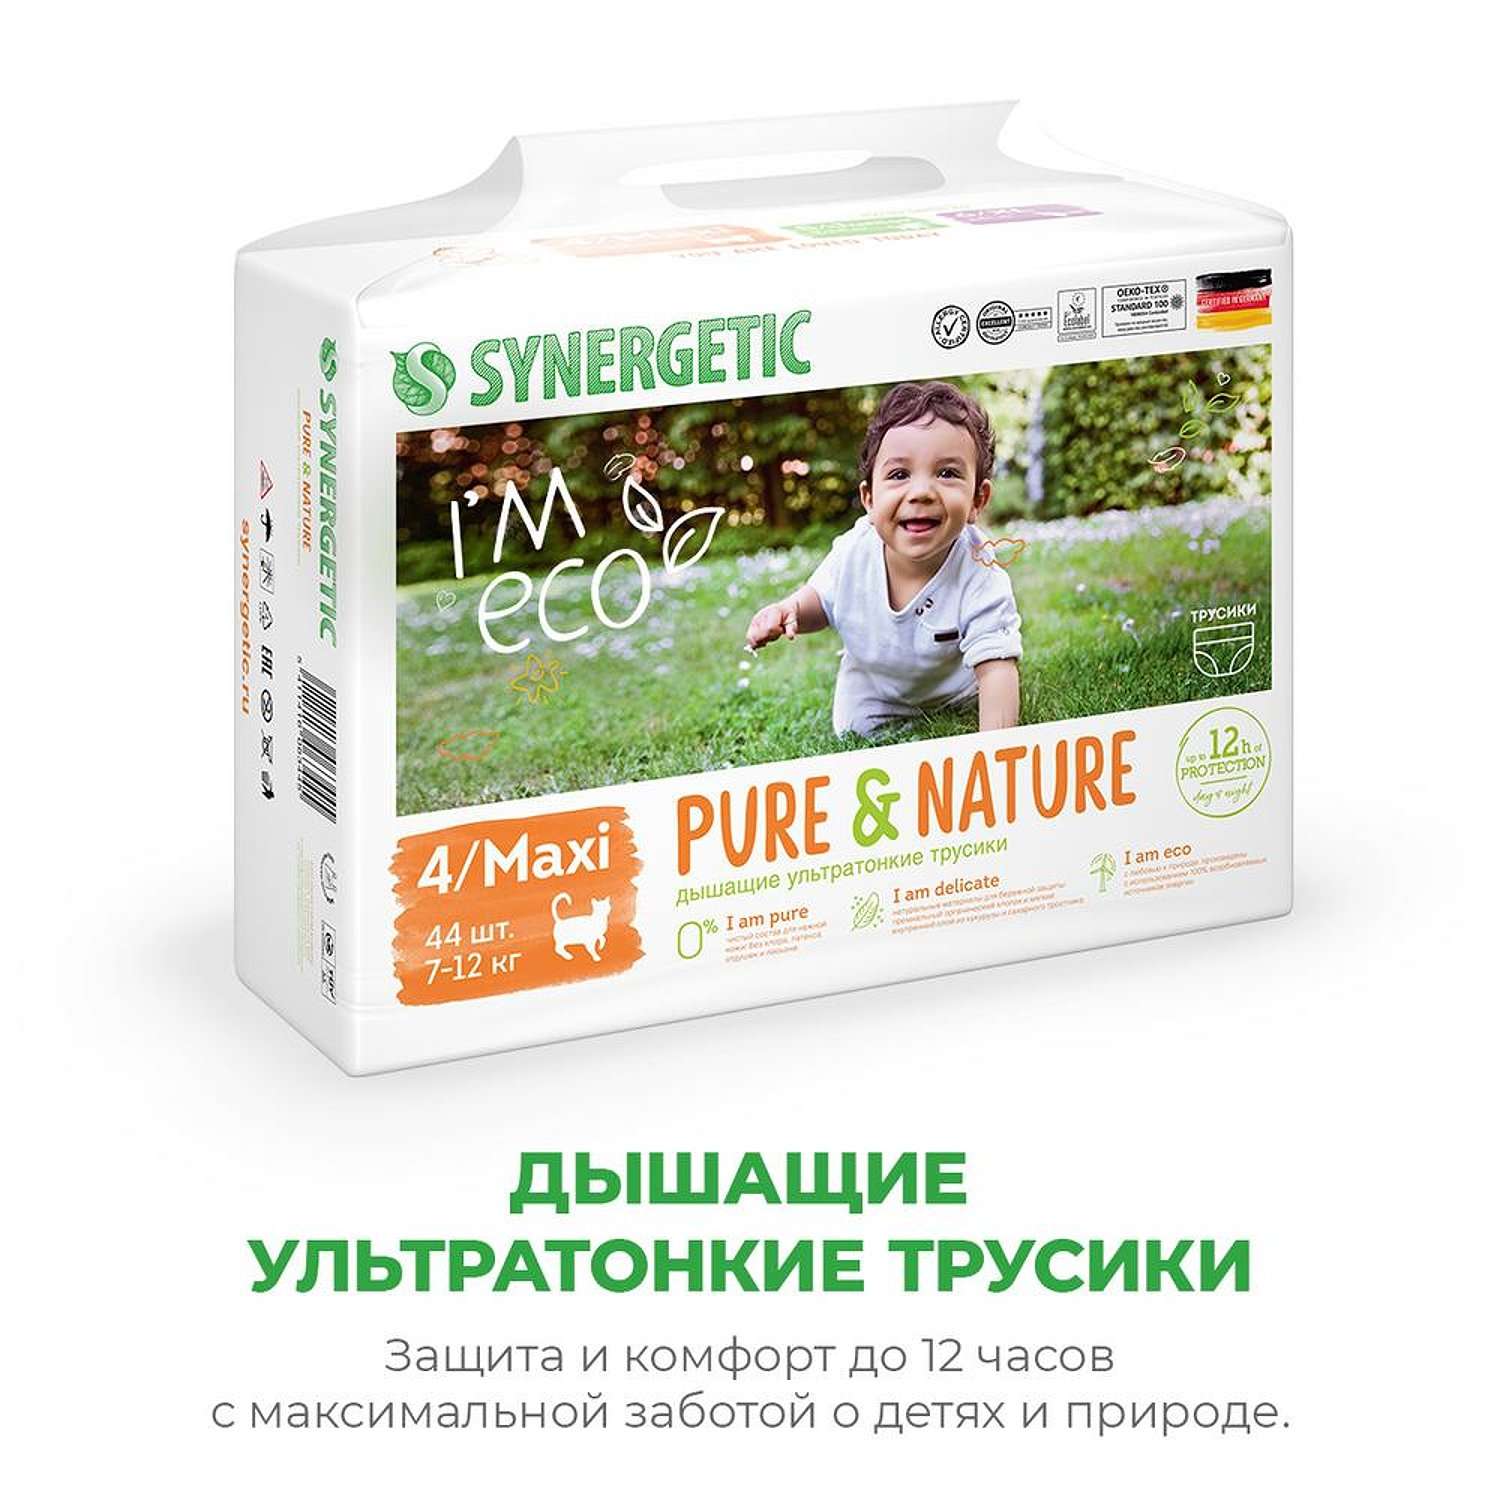 Подгузники-трусики SYNERGETIC Pure_Nature размер 4 Maxi вес 7-12 кг 44 шт - фото 2